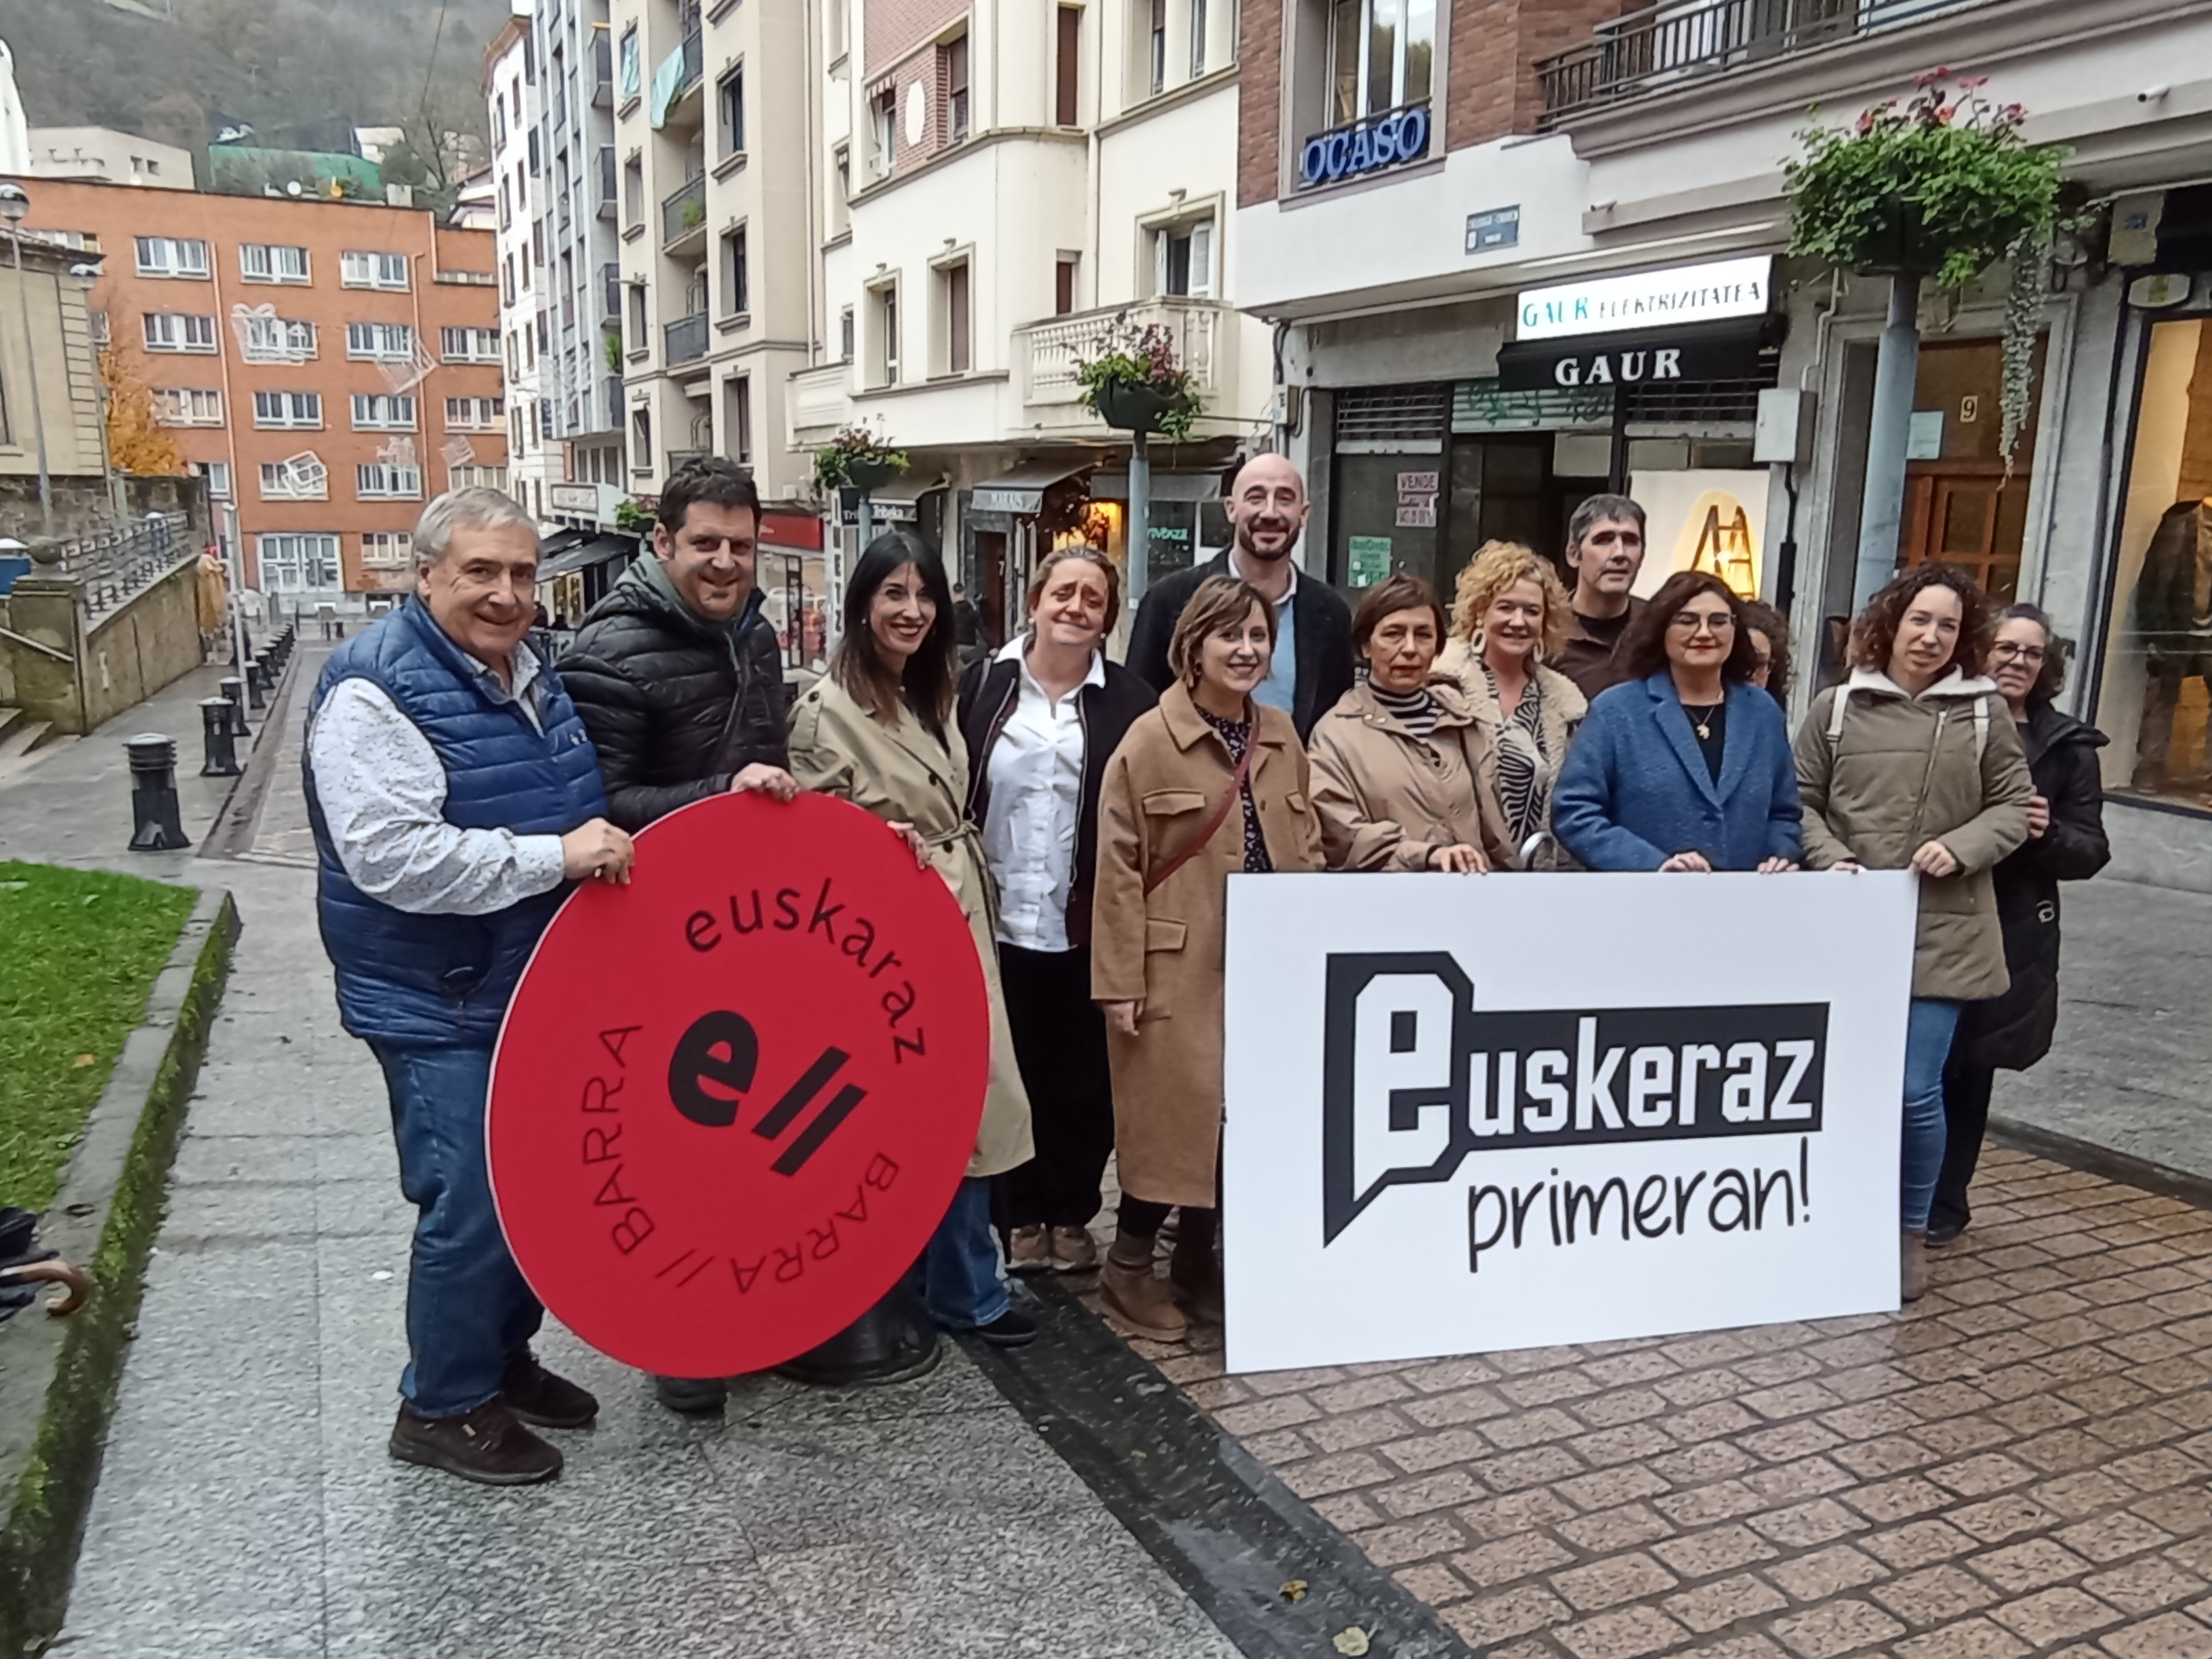 Eibarko establezimenduetan Euskaraz barra-barra eta Euskeraz Primeran!